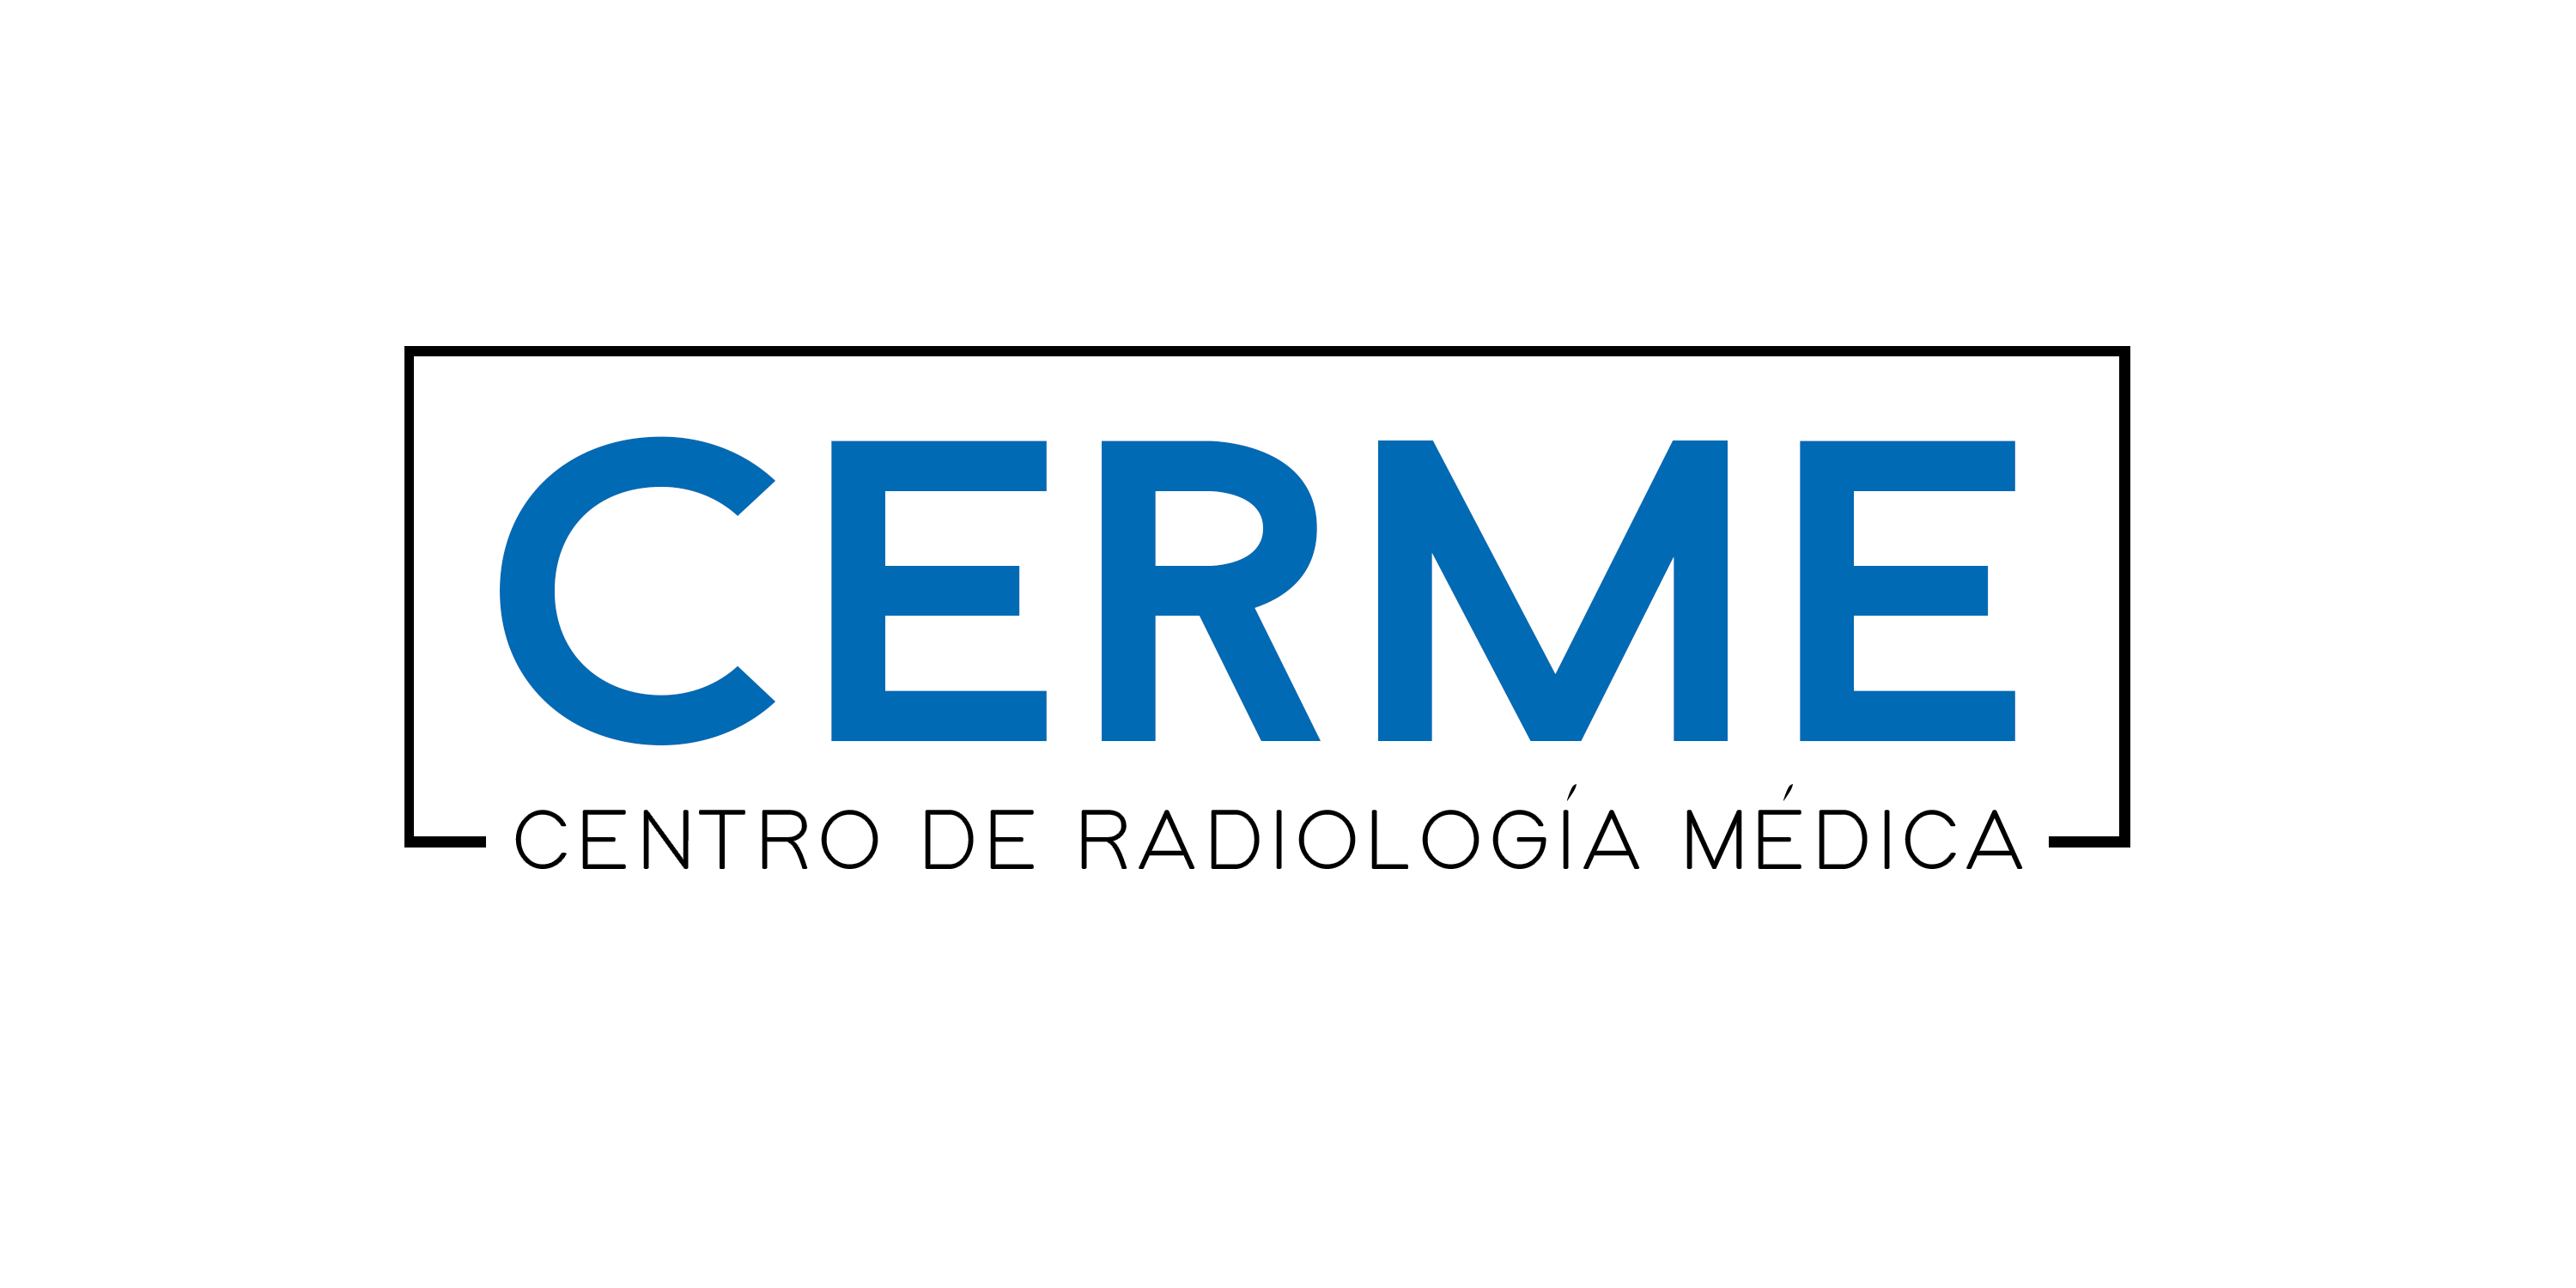 Centro de Radiologia Médica (CERME)